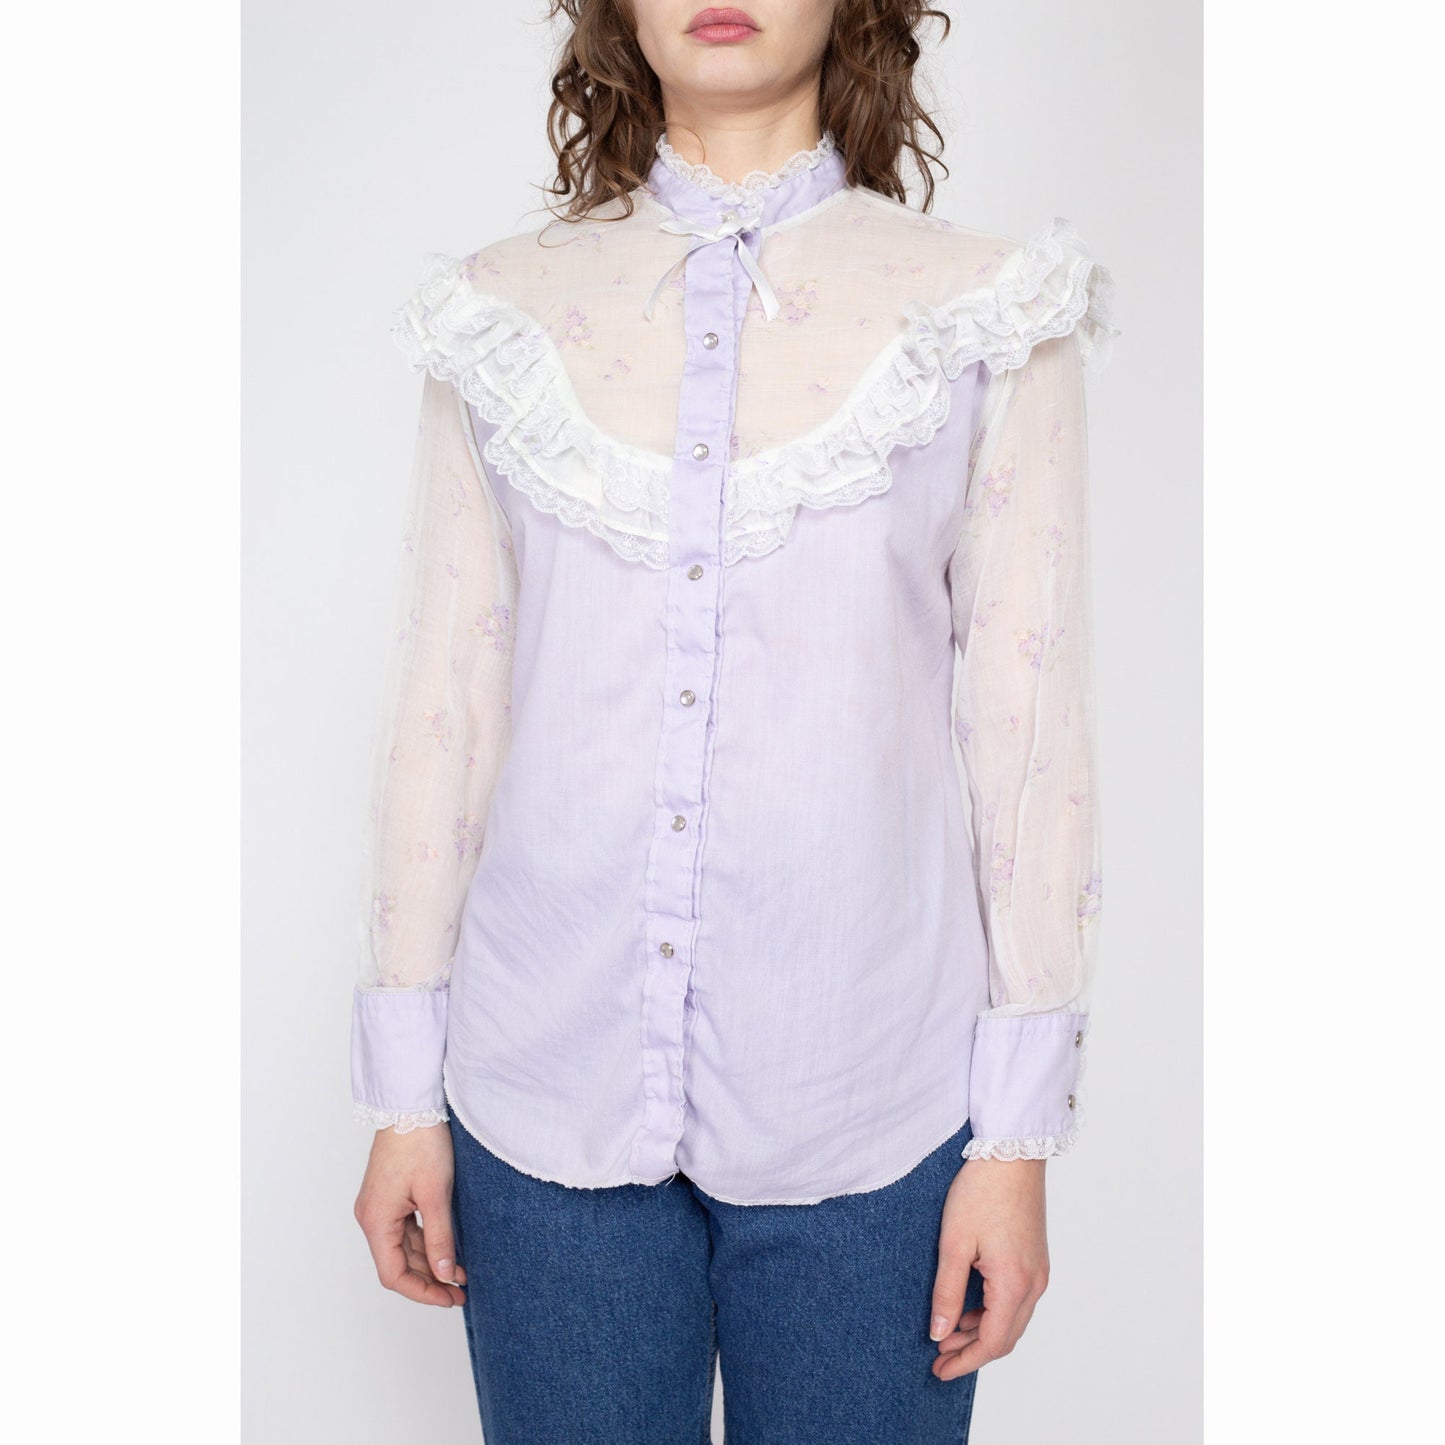 Large 70s Pastel Purple Western Lace Trim Prairie Blouse | Vintage Sheer Floral Long Sleeve Pearl Snap Boho Top